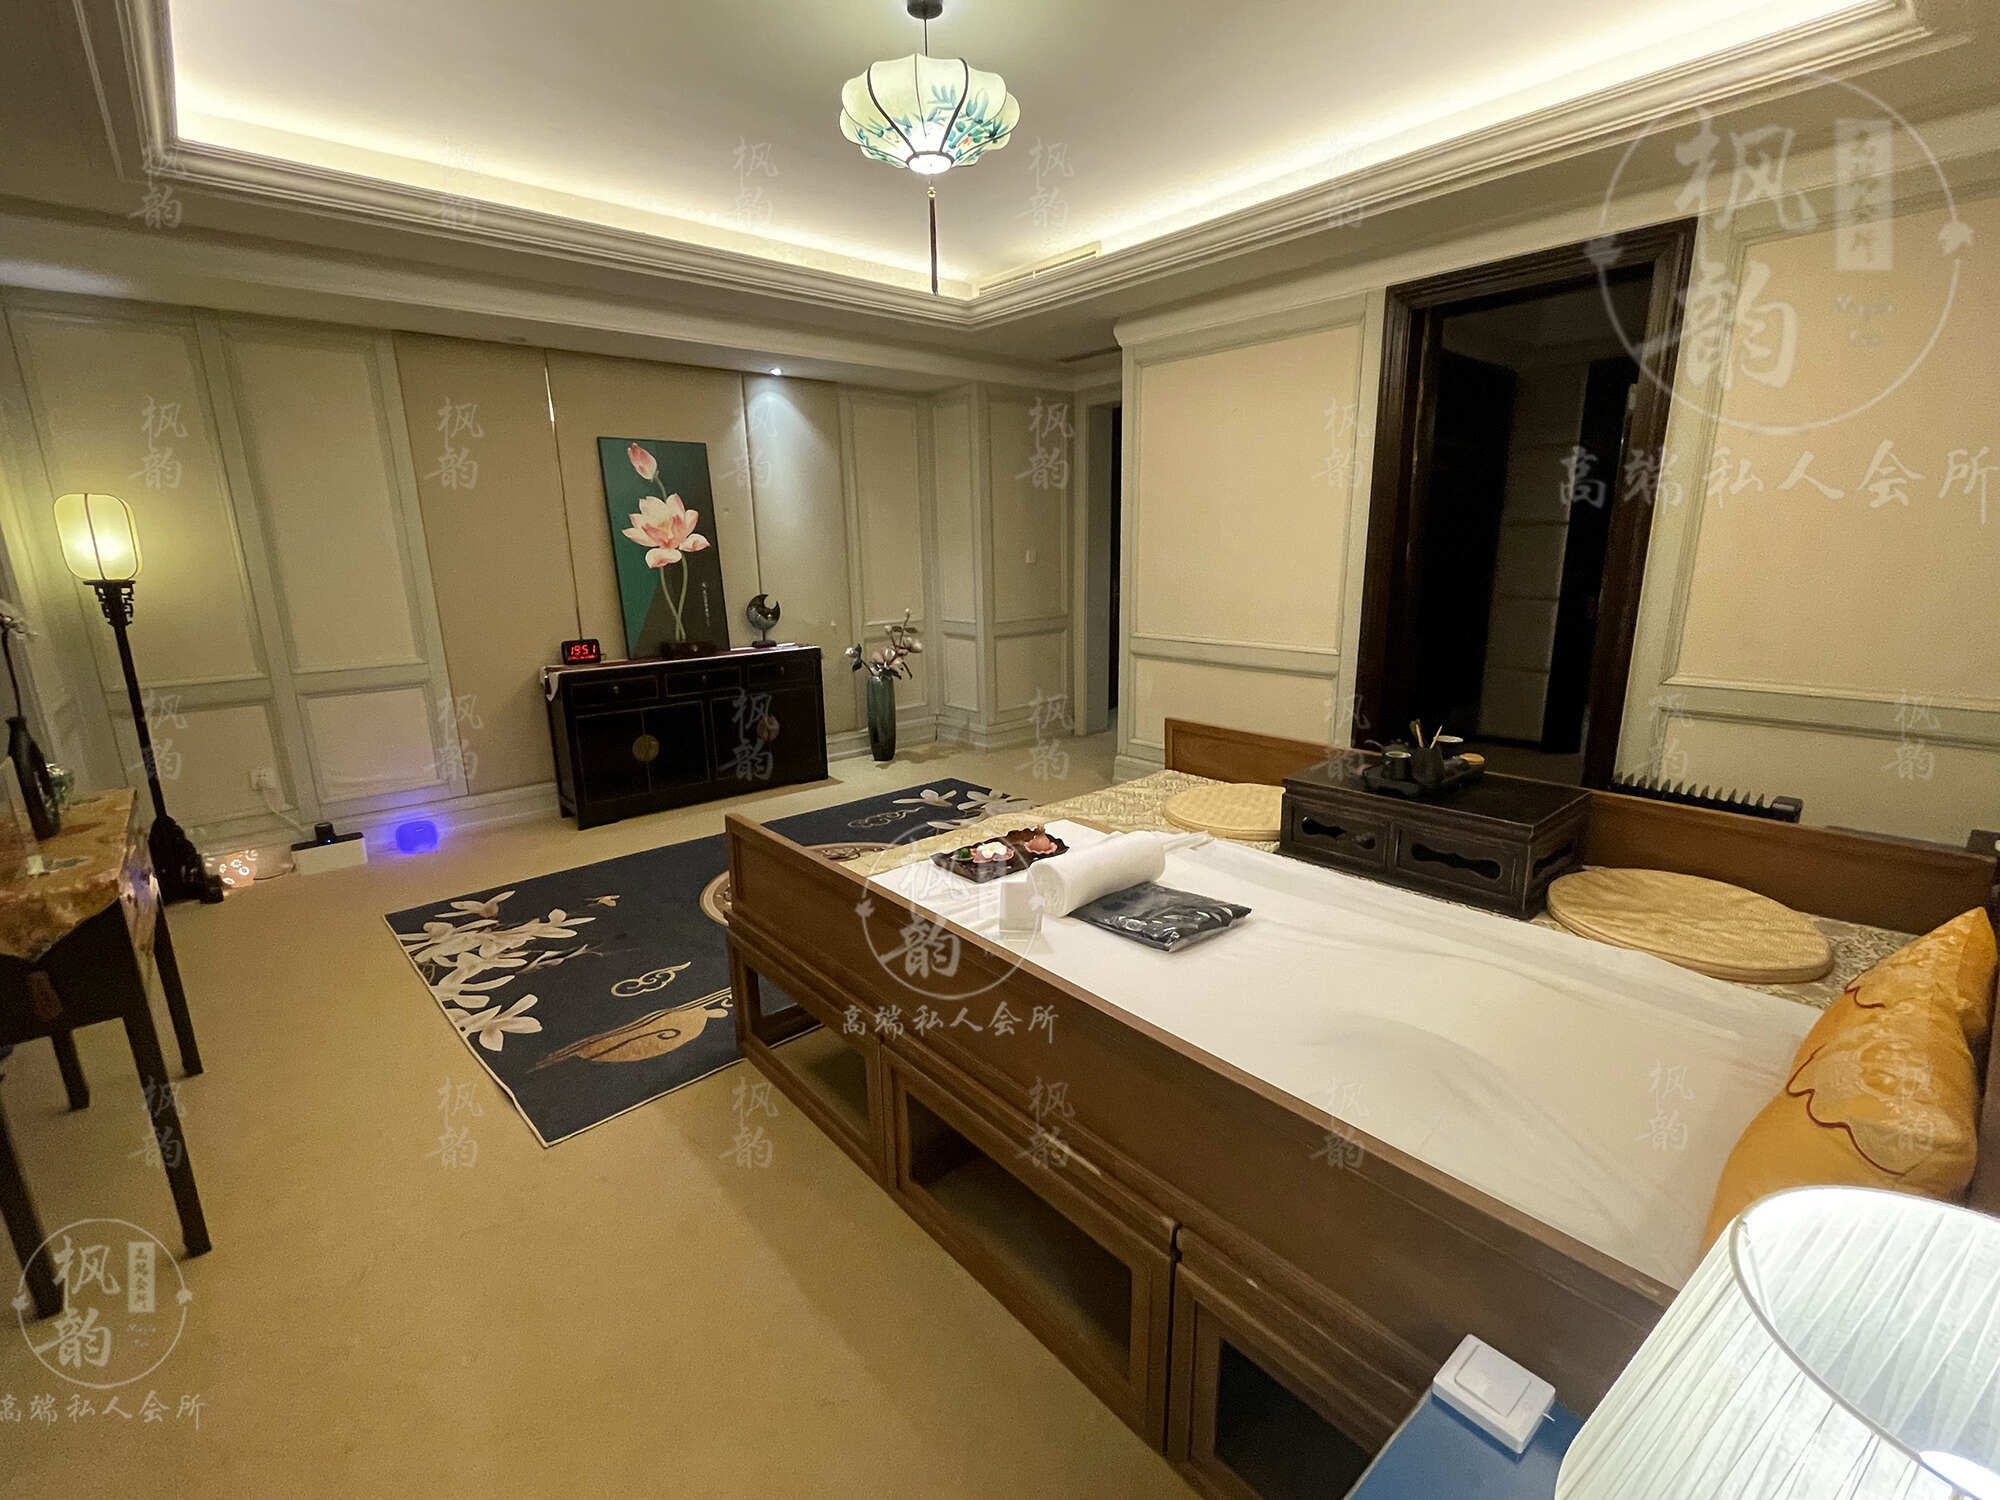 三明天津渔阳鼓楼人气优选沐足会馆房间也很干净，舒适的spa体验